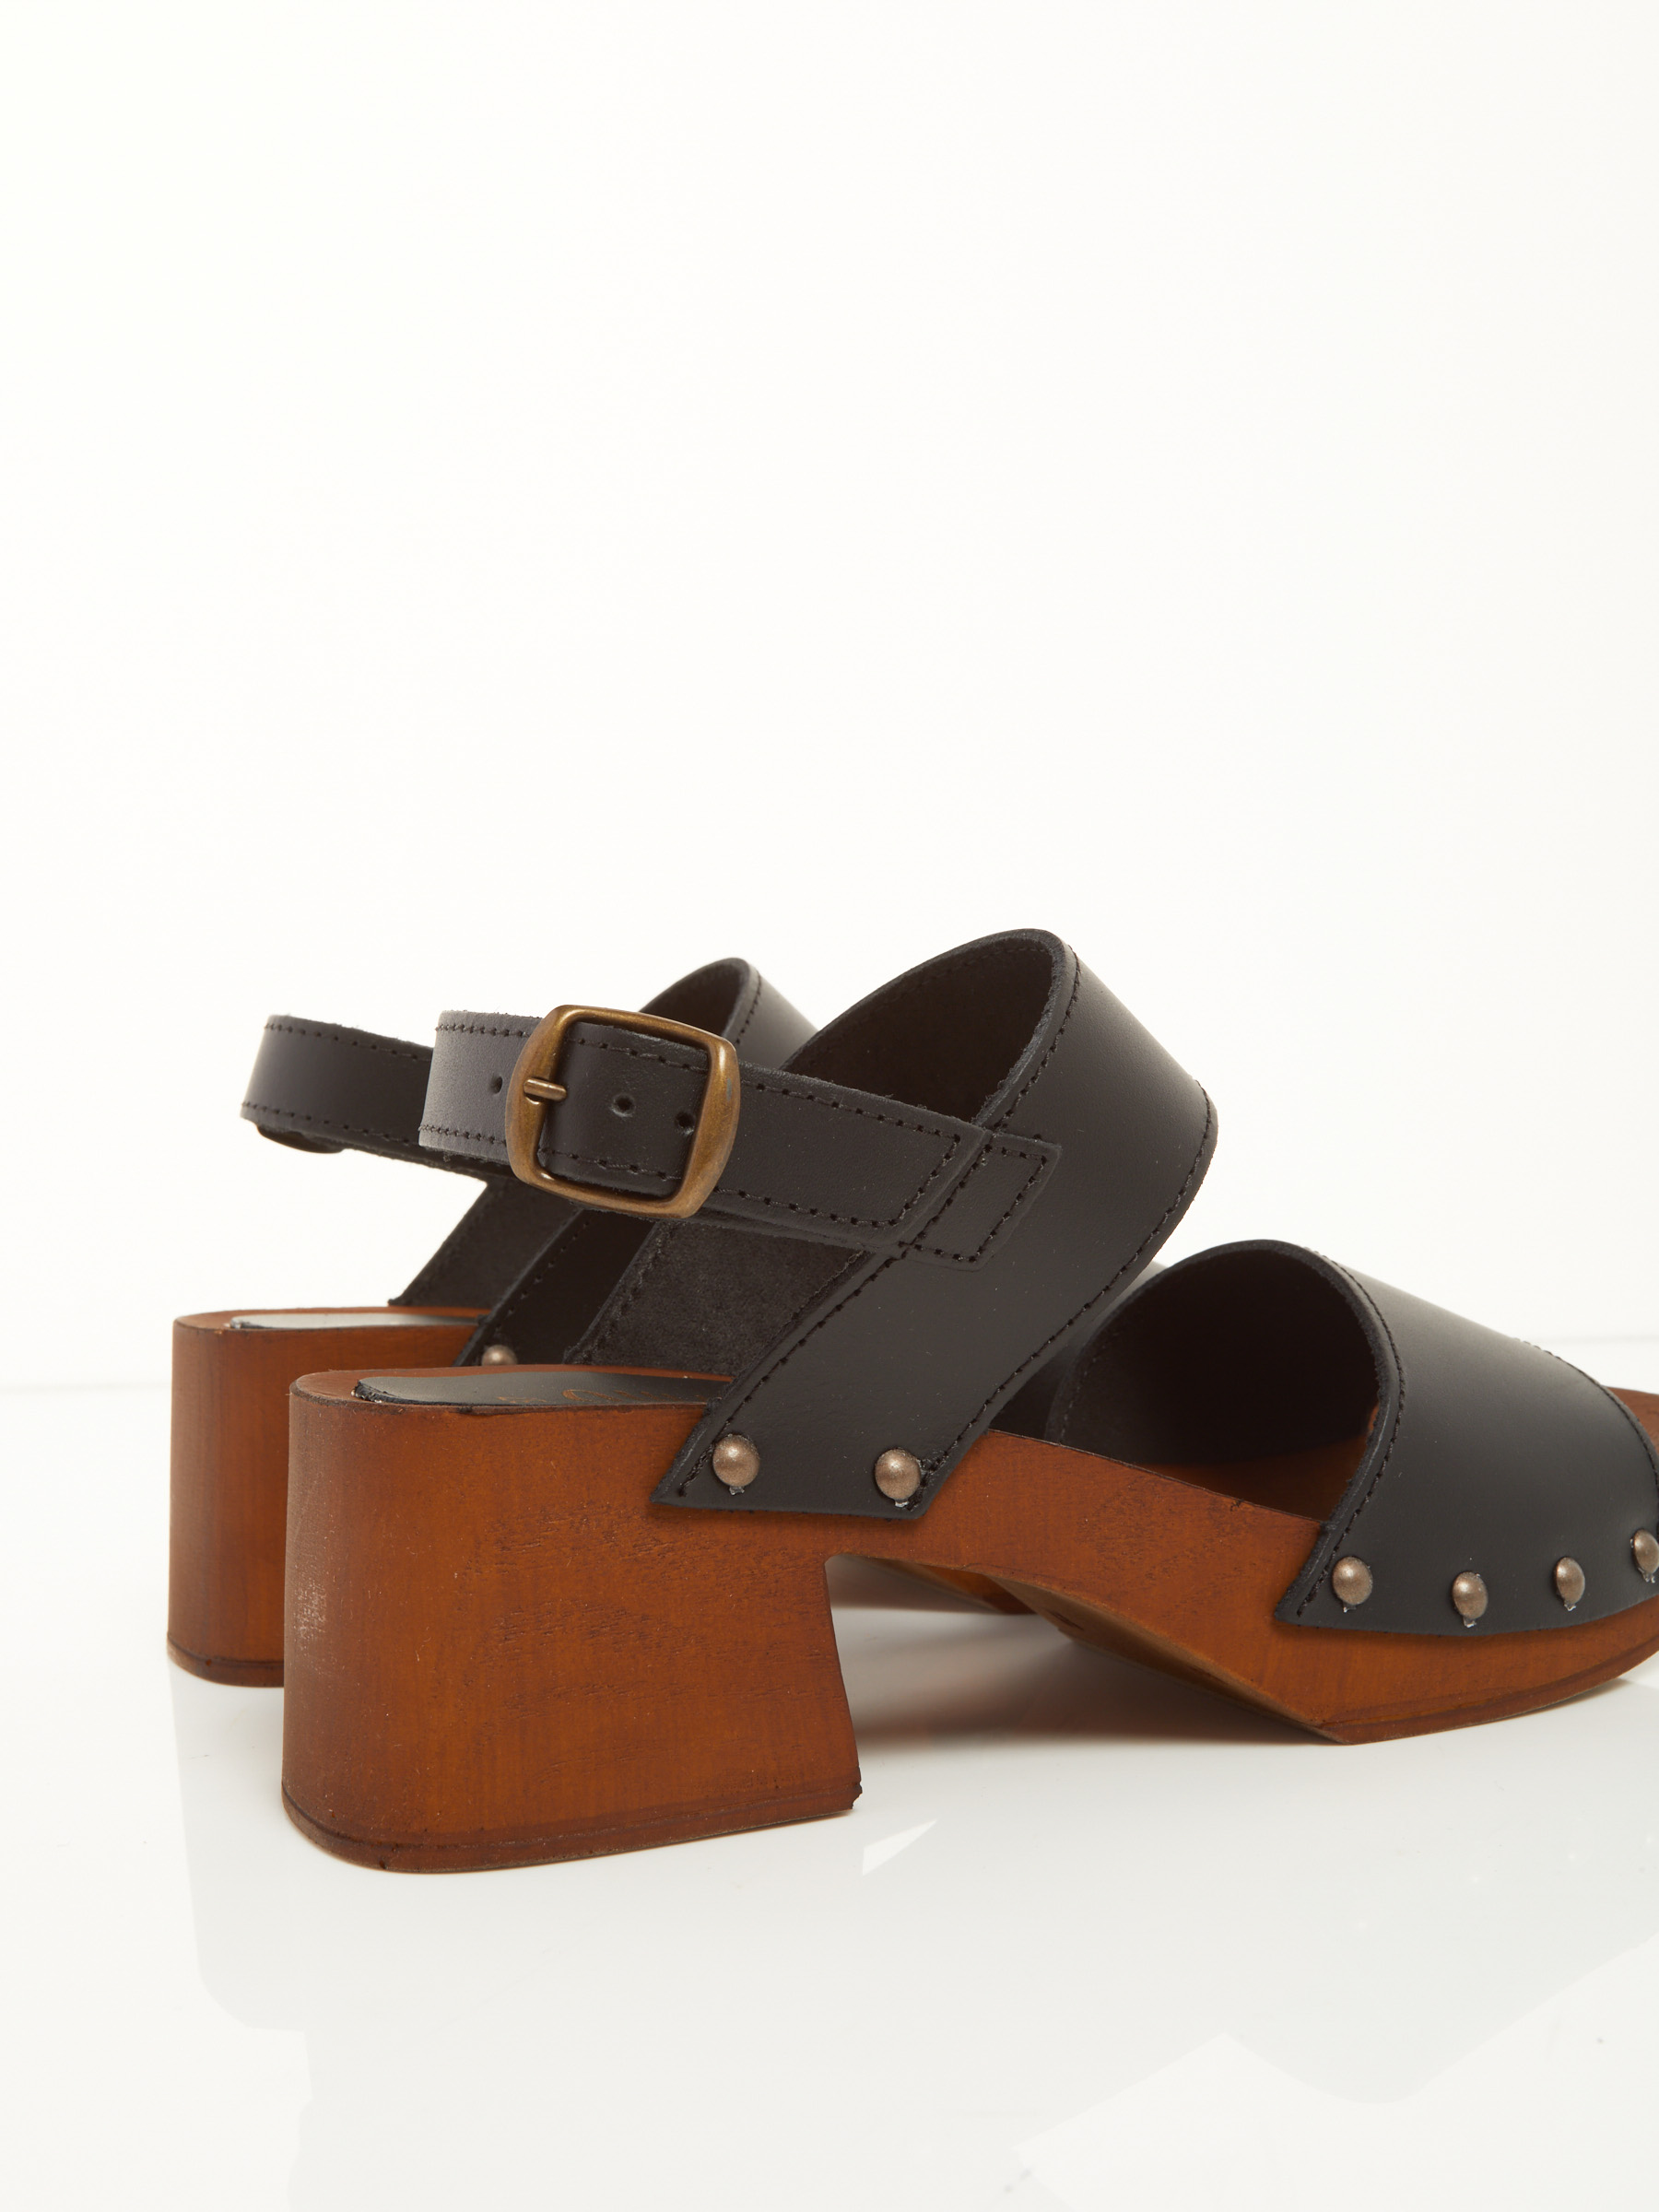 Sconti Fino A - 88% Leather Sandal F0545554-0440 Comperare